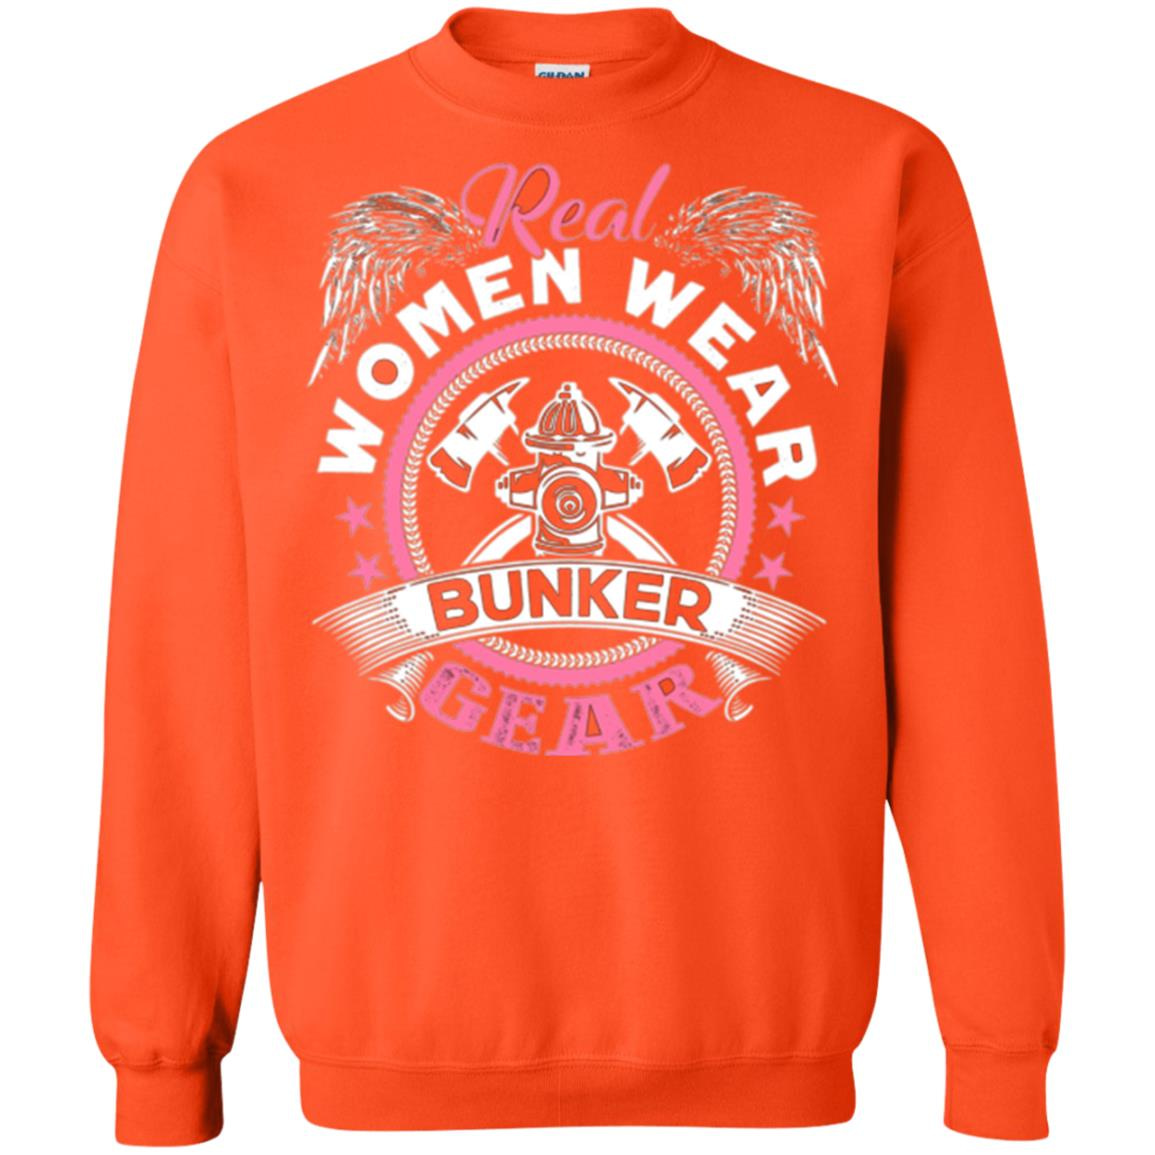 Inktee Store - Firefighter Women Wear Bunker Gear Sweatshirt Image